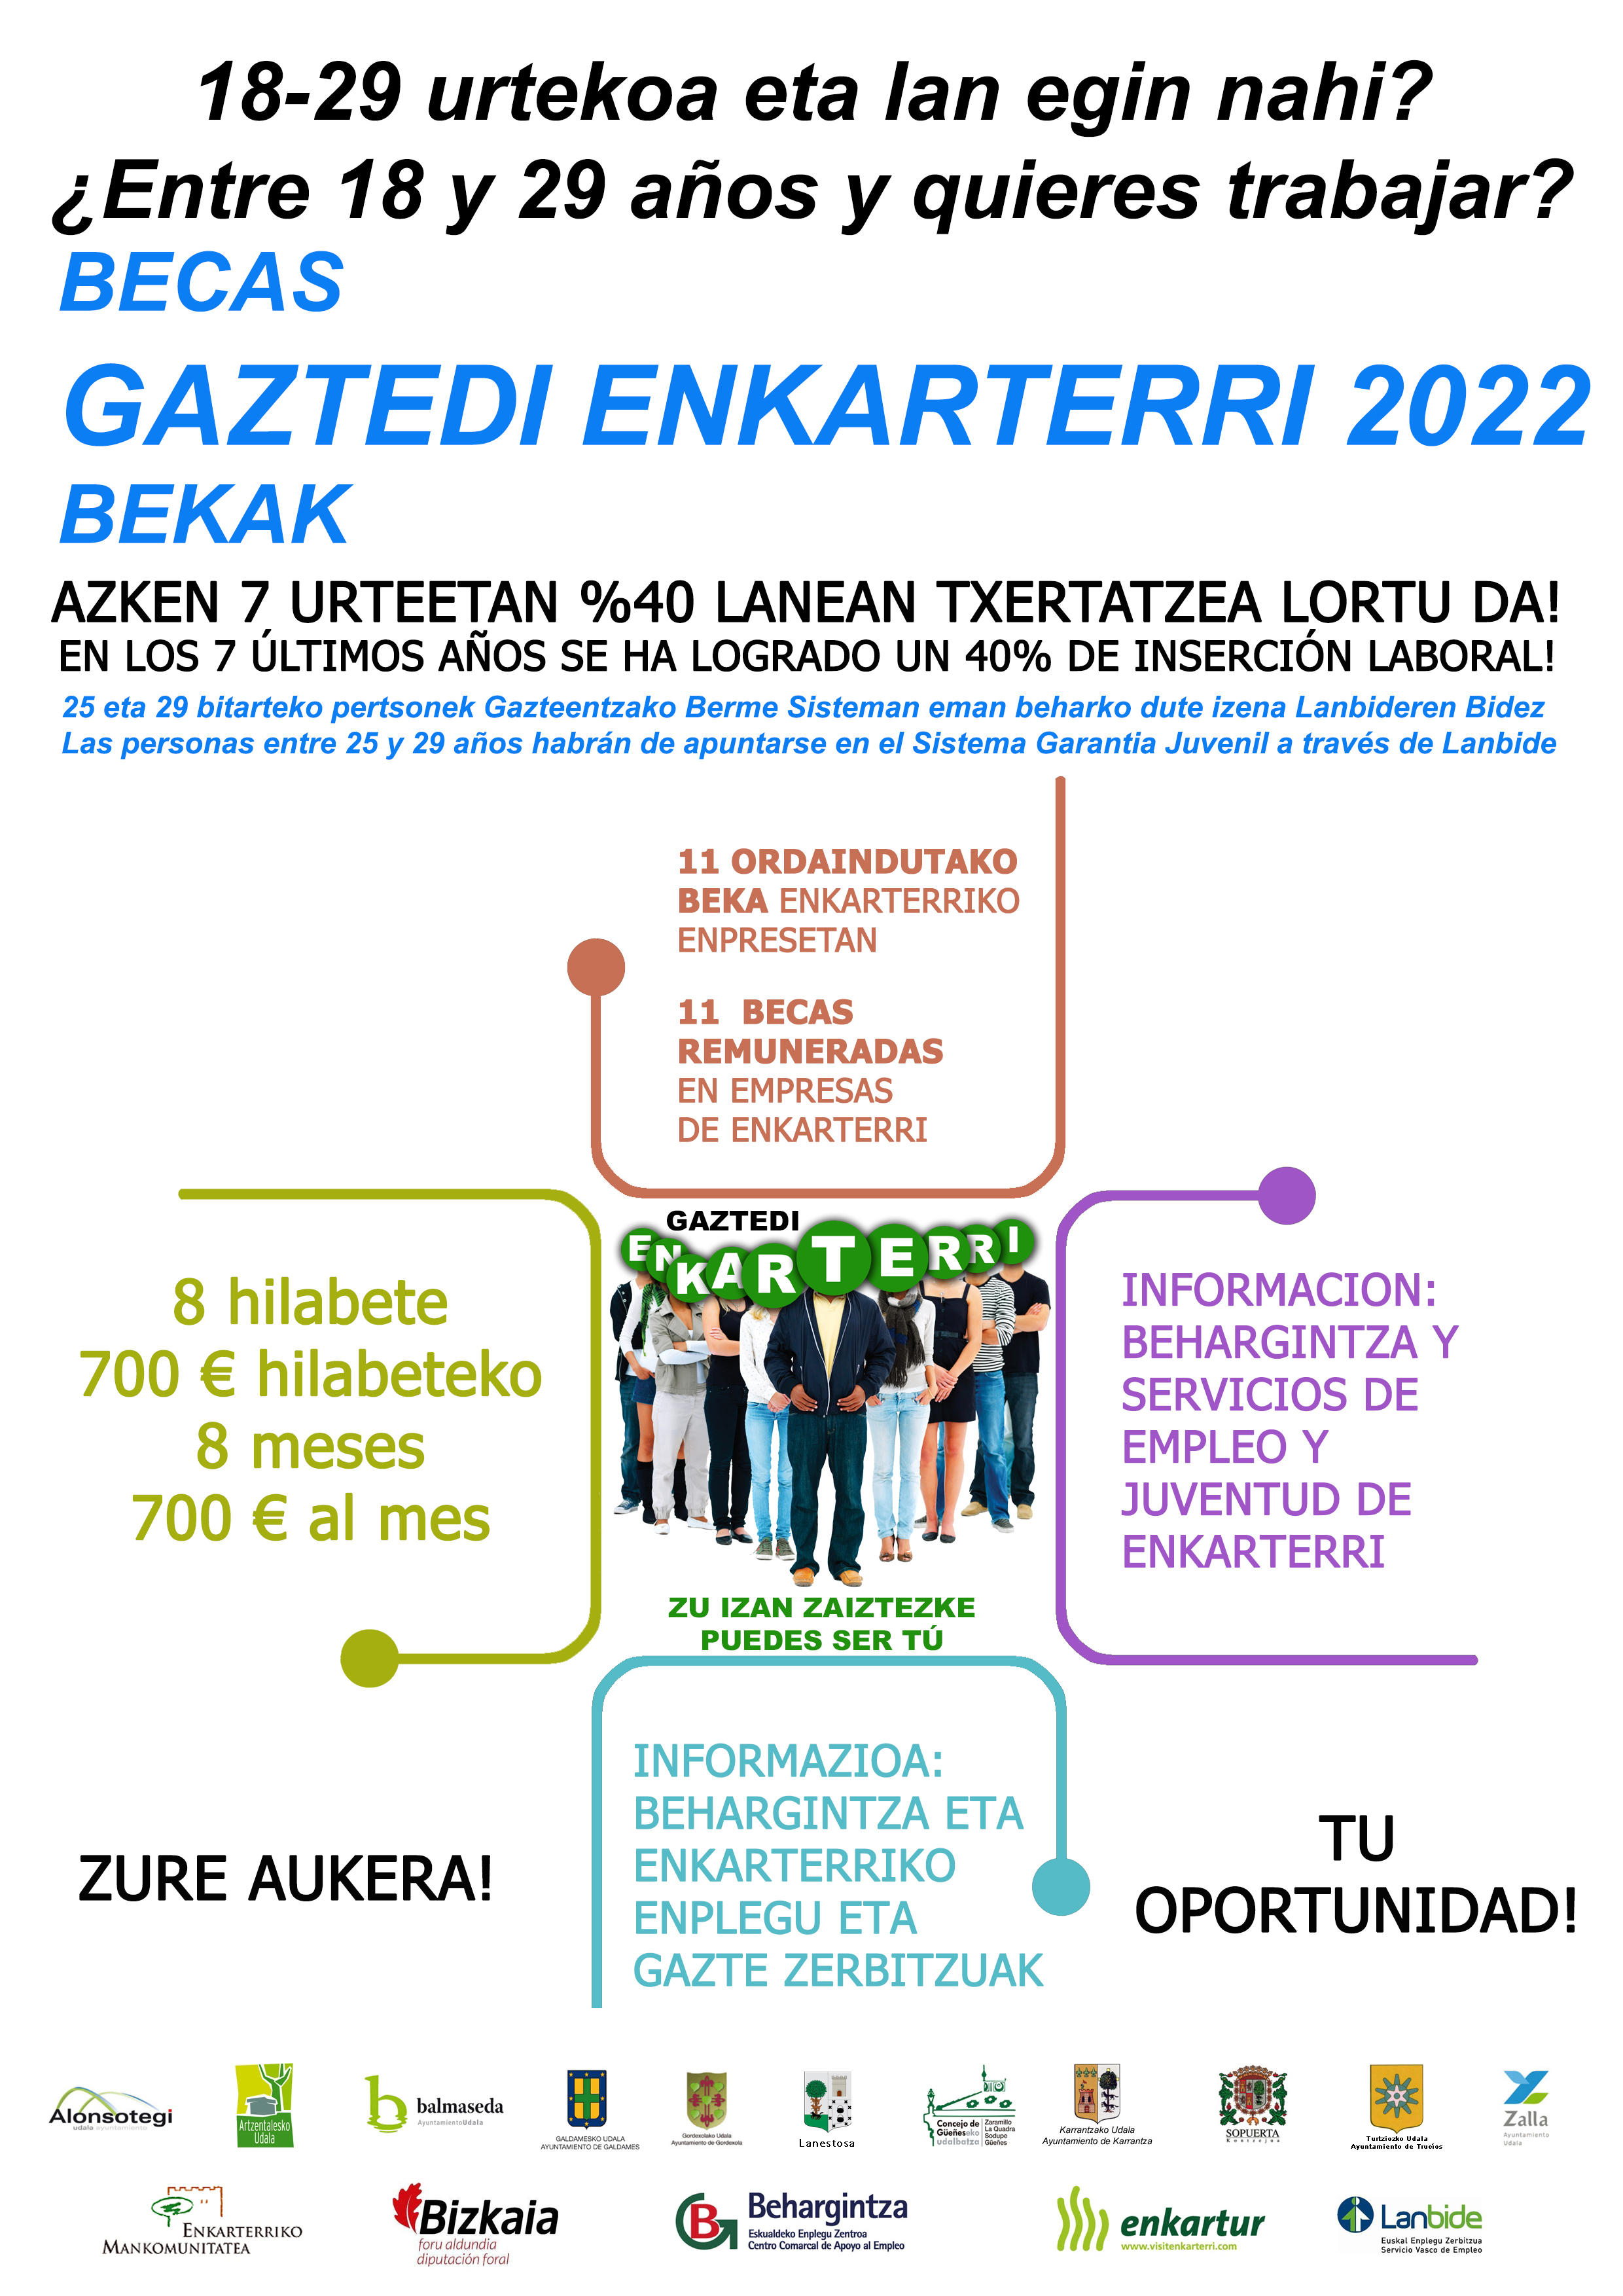 Becas Gaztedi Enkarterri 2022